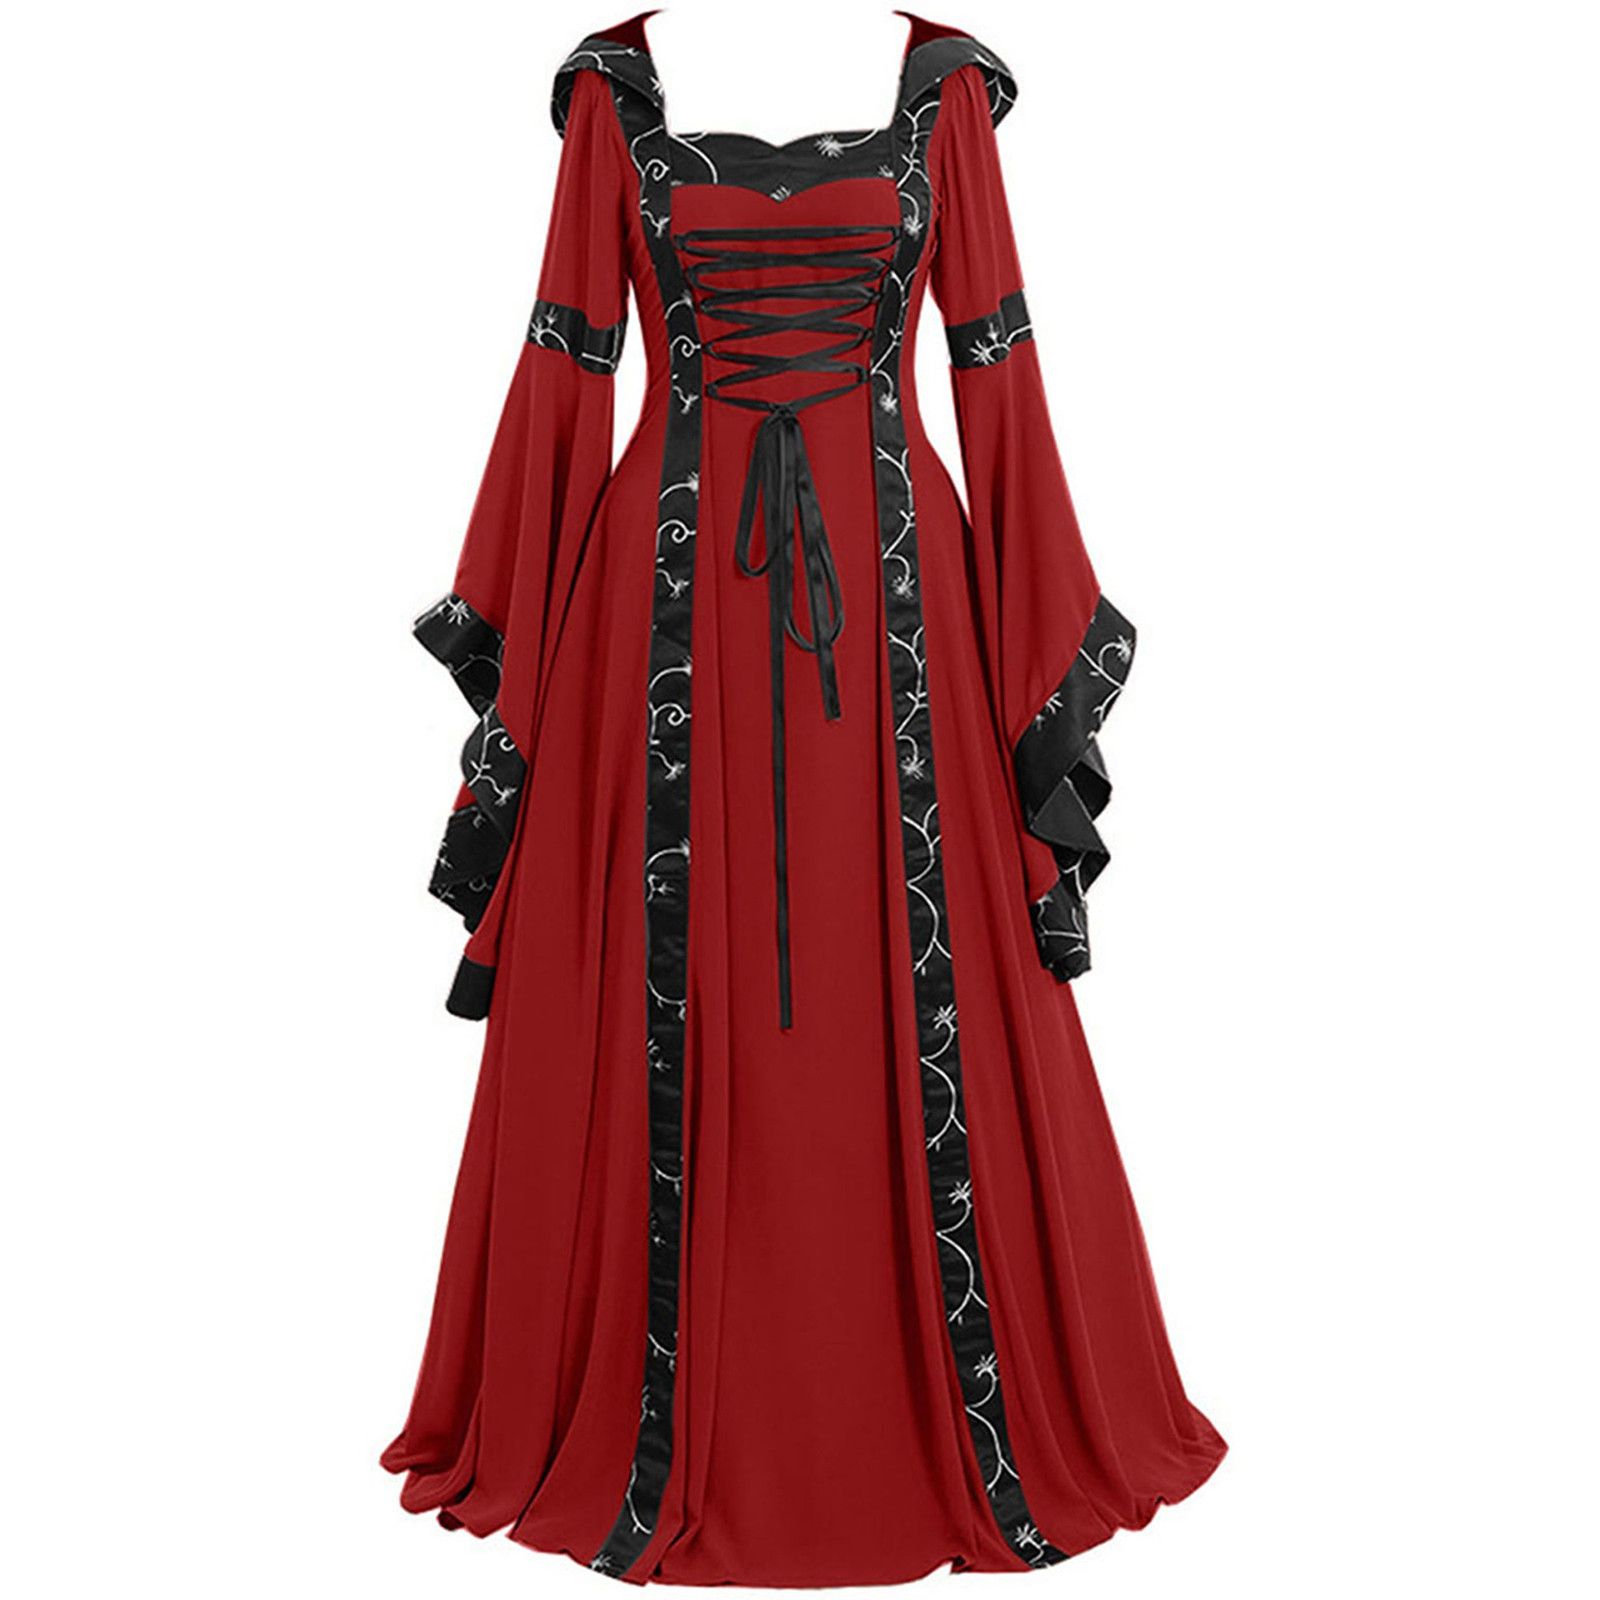 Gothic renaissance costumes